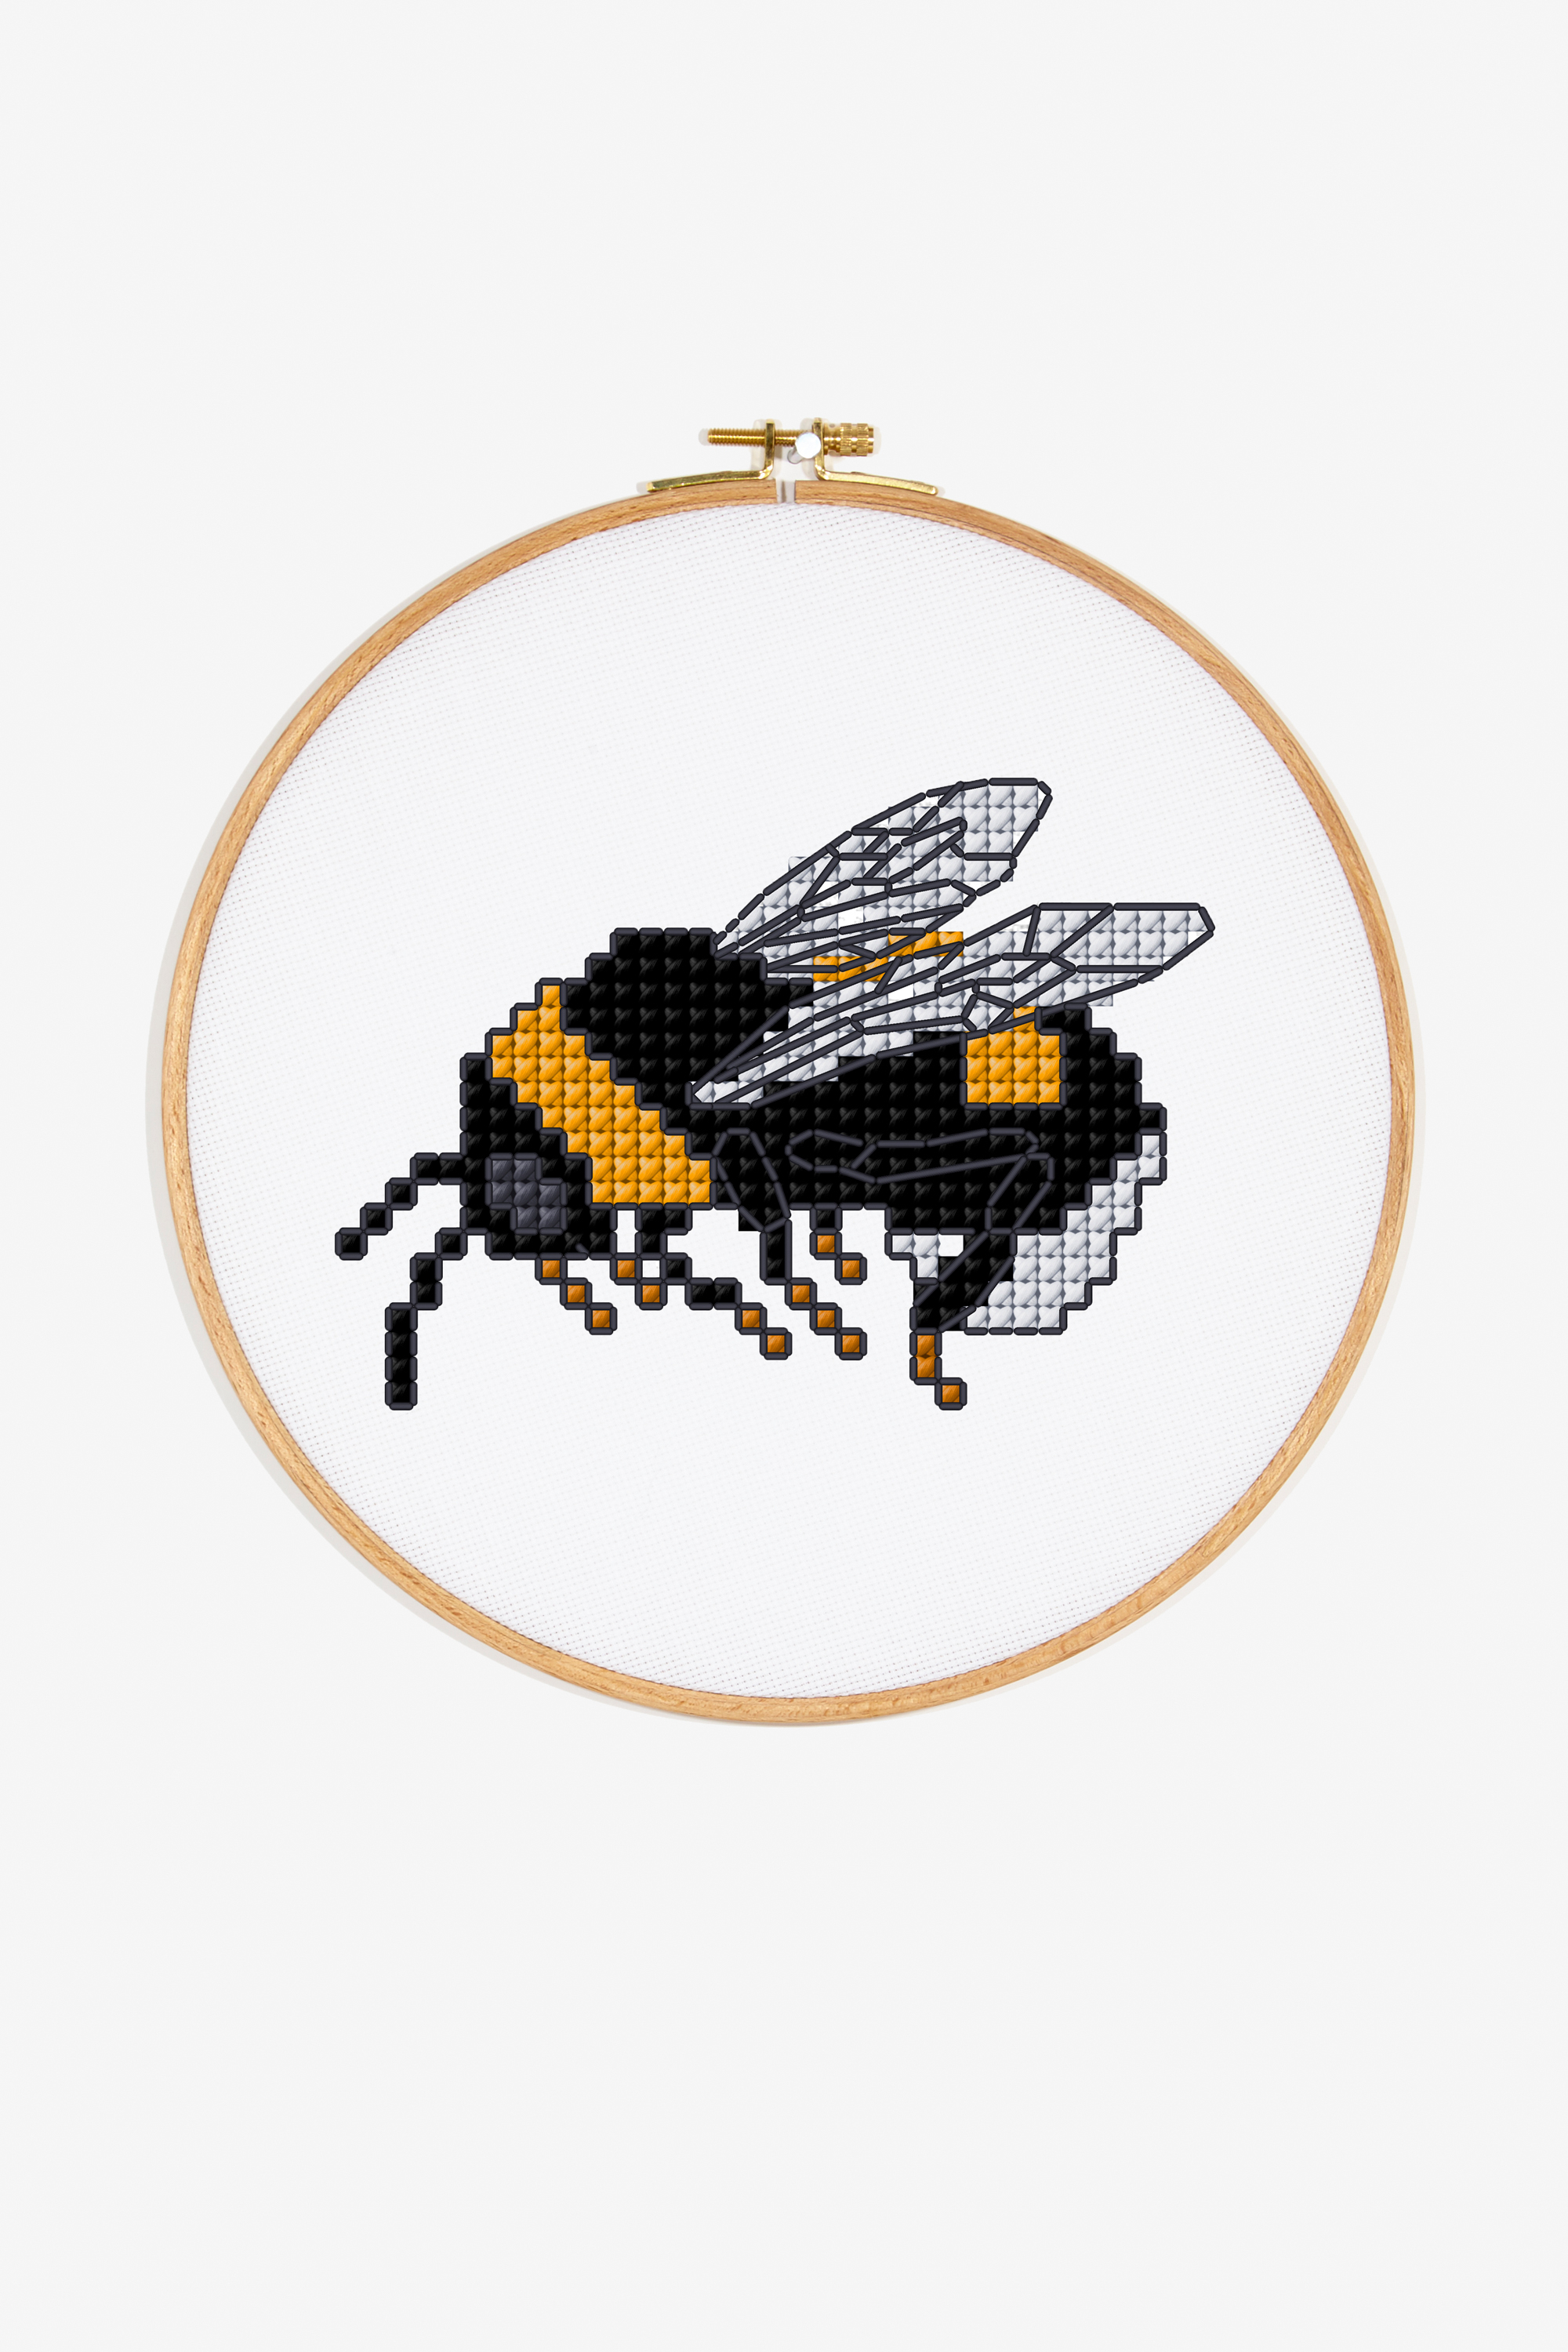 Bee Embroidery Pattern Bumble Bee Pattern Free Cross Stitch Patterns Dmc